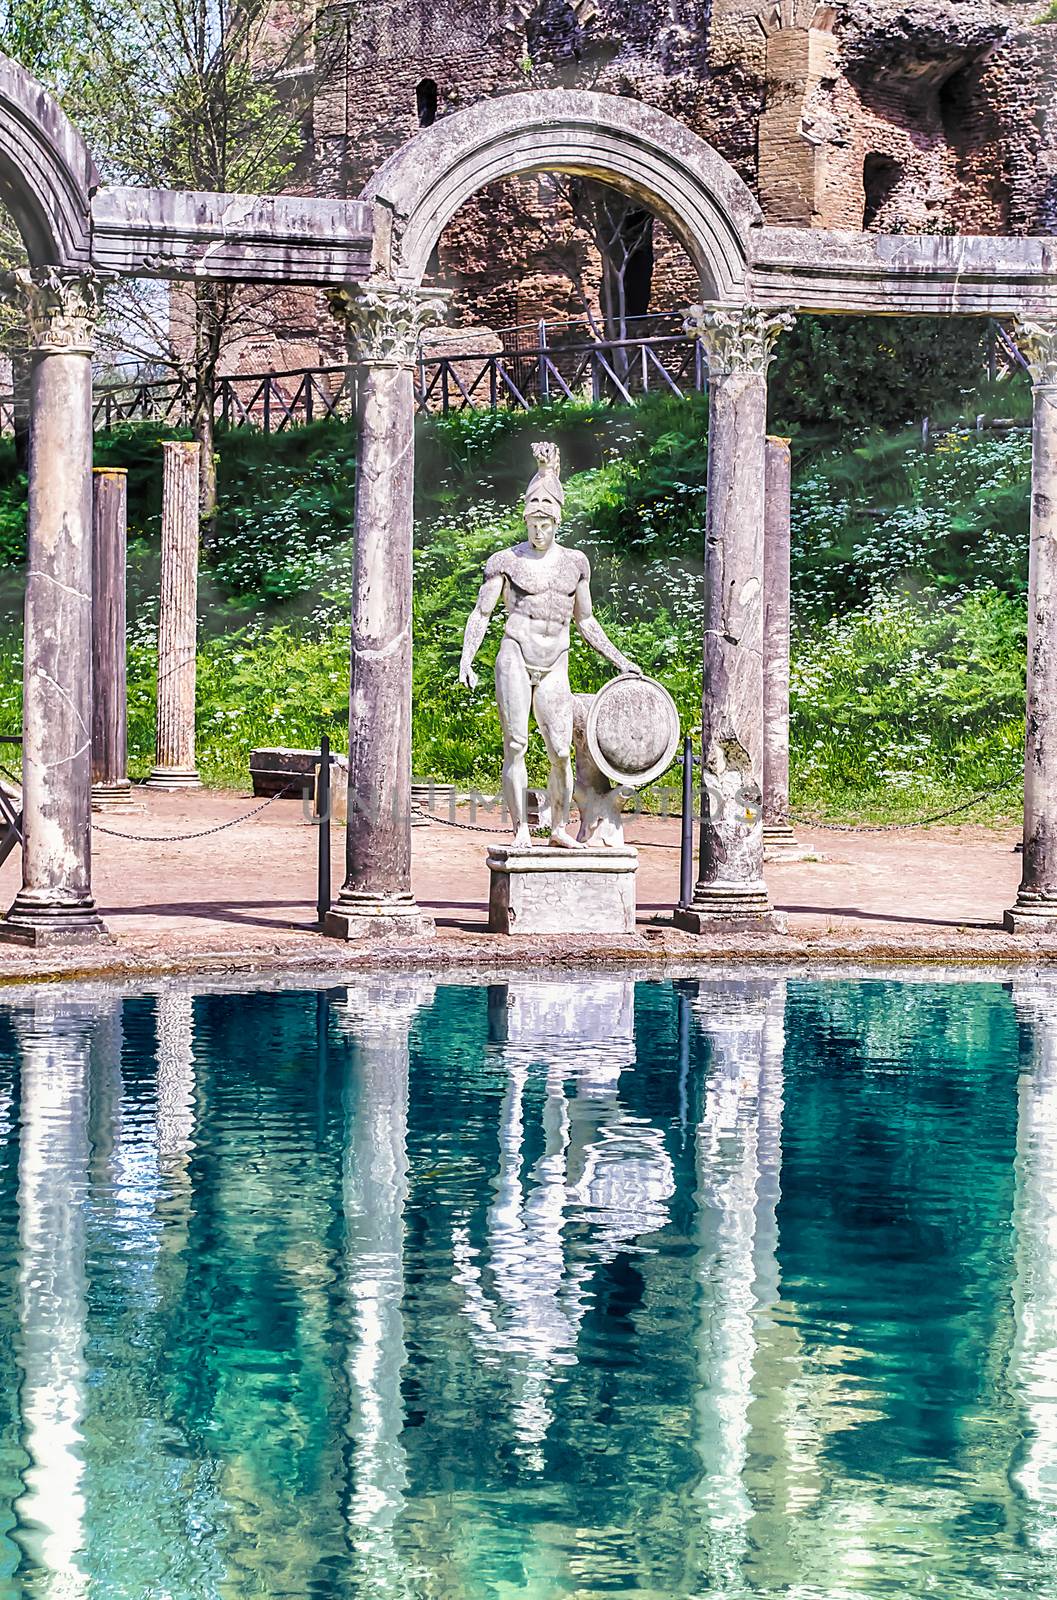 Greek statue of Ares, inside Villa Adriana, Tivoli, Italy by marcorubino